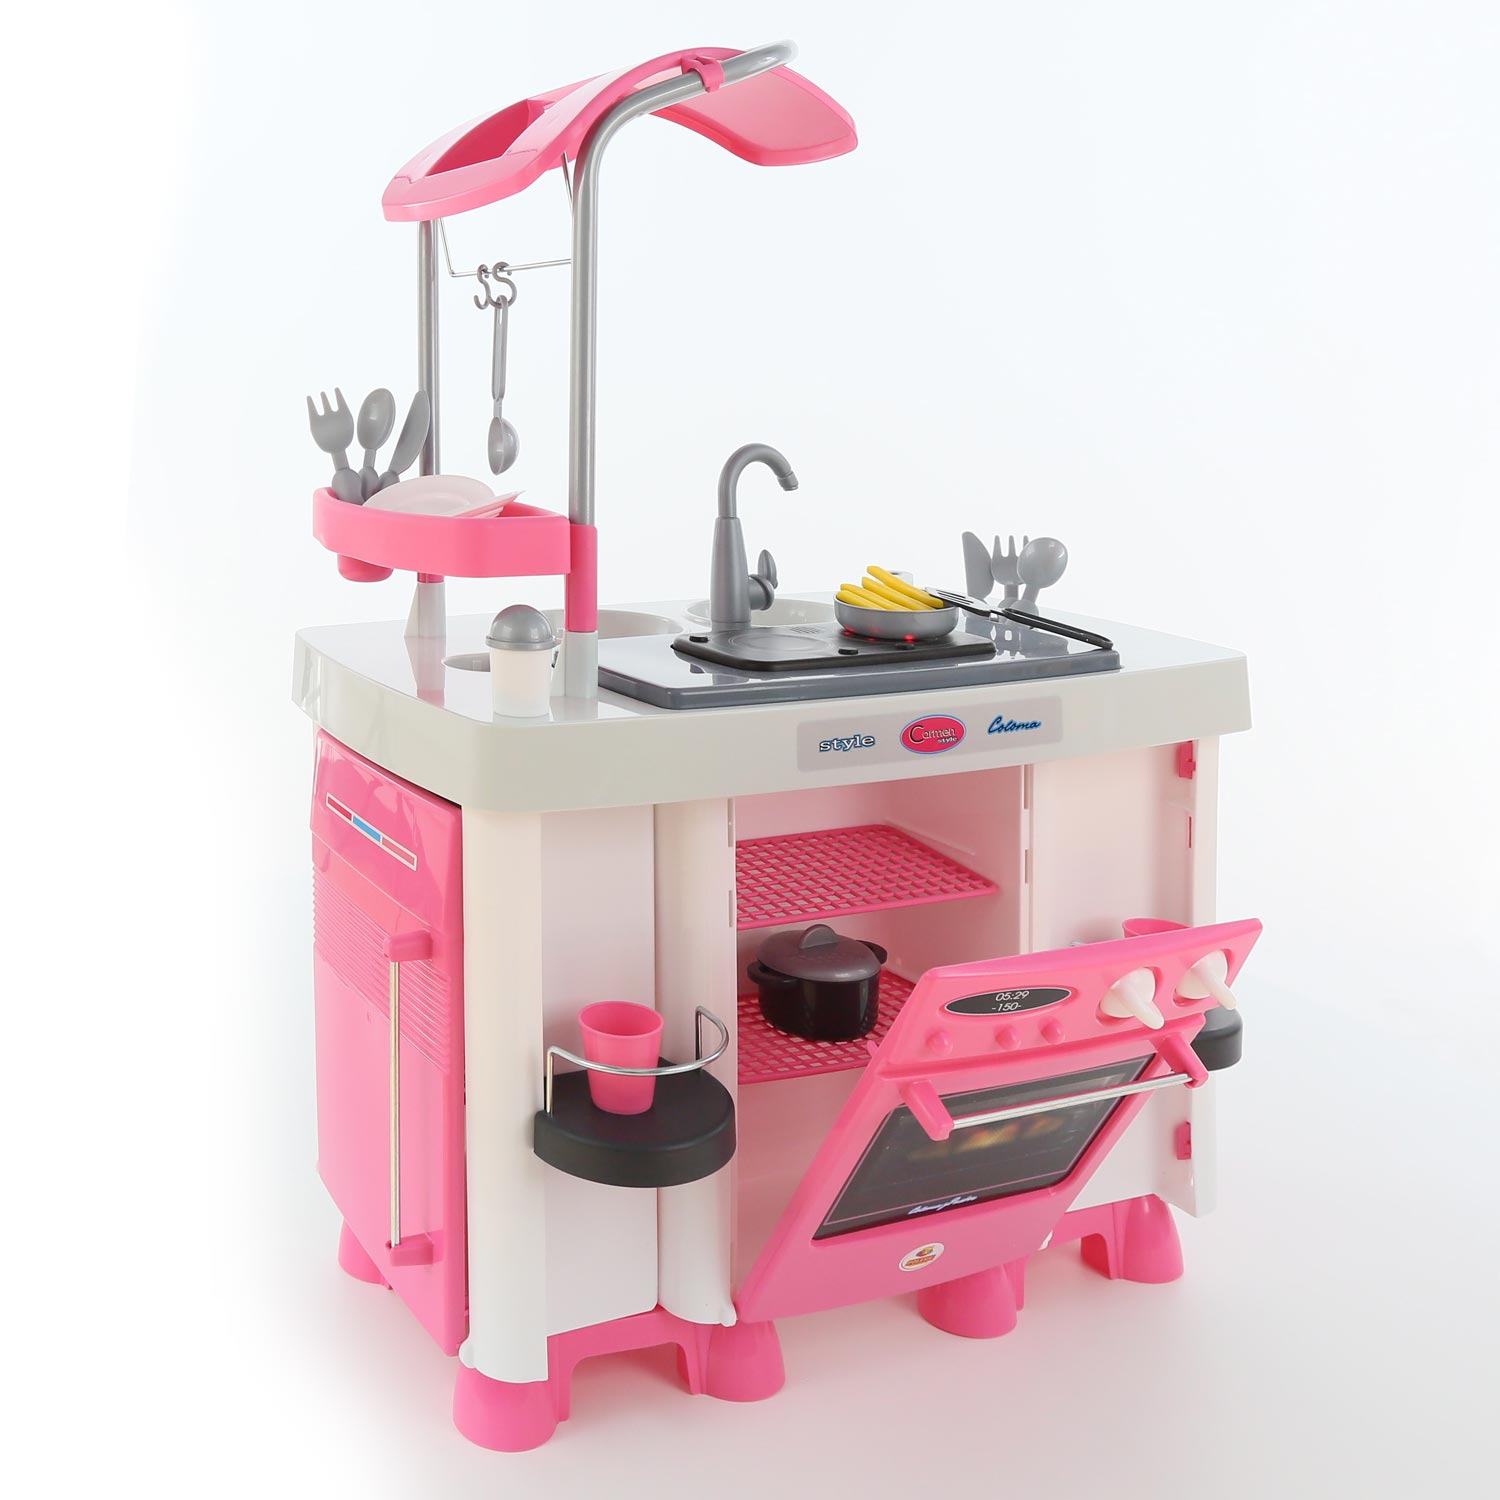 WADER Spielküche mit Spülmaschine Kinderküche Kinderspielzeug Set Carmen 